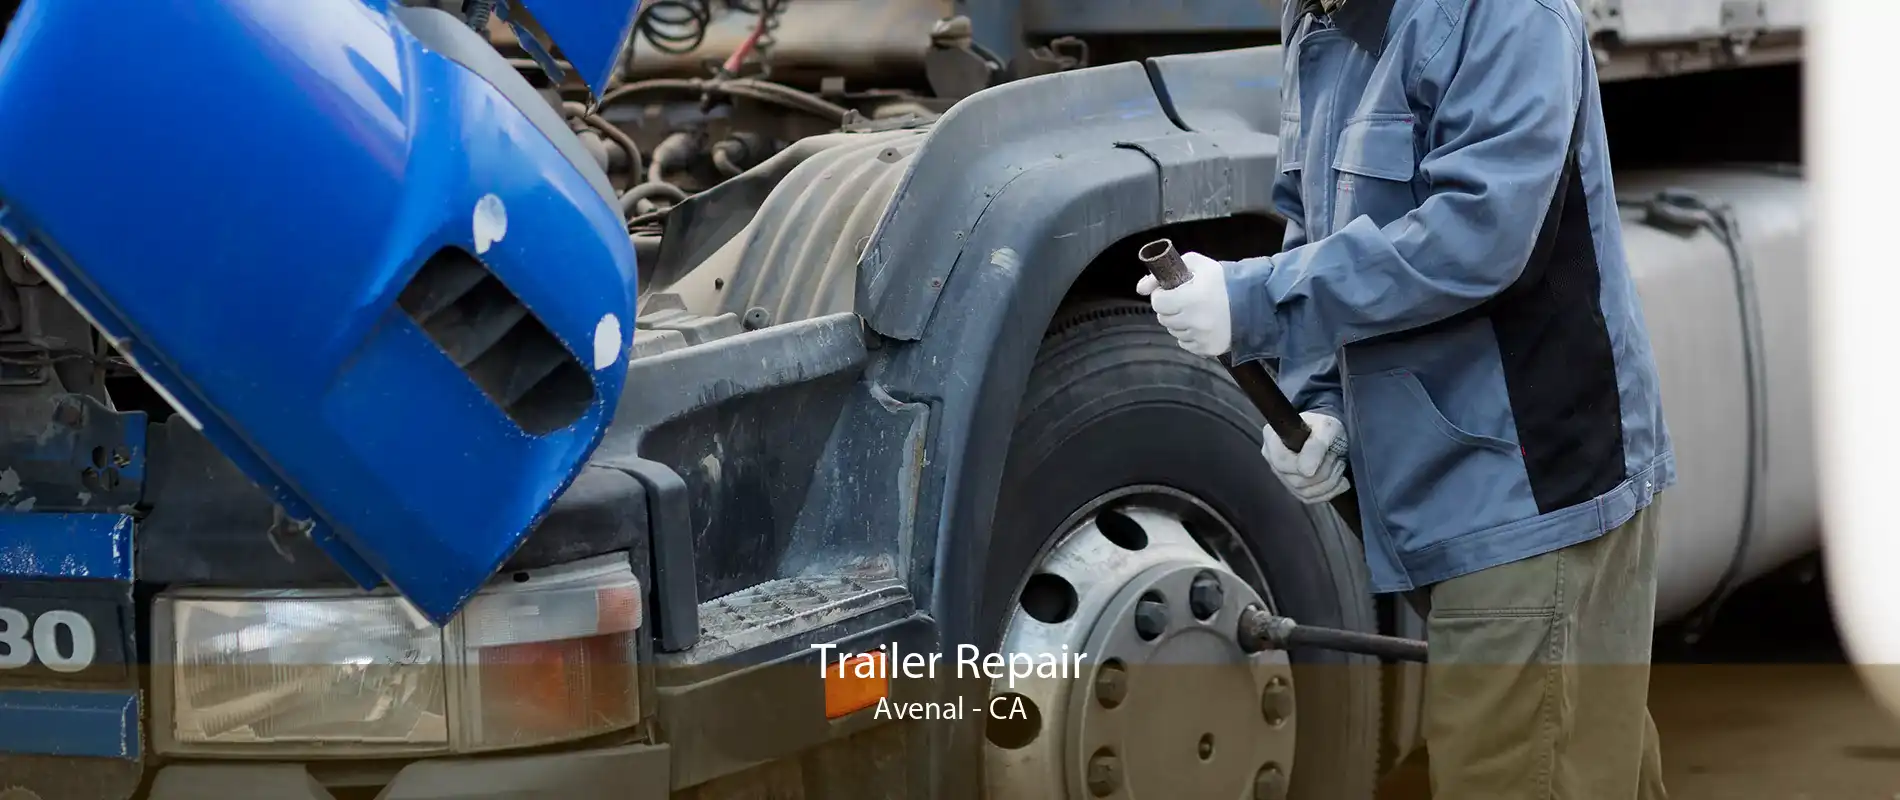 Trailer Repair Avenal - CA